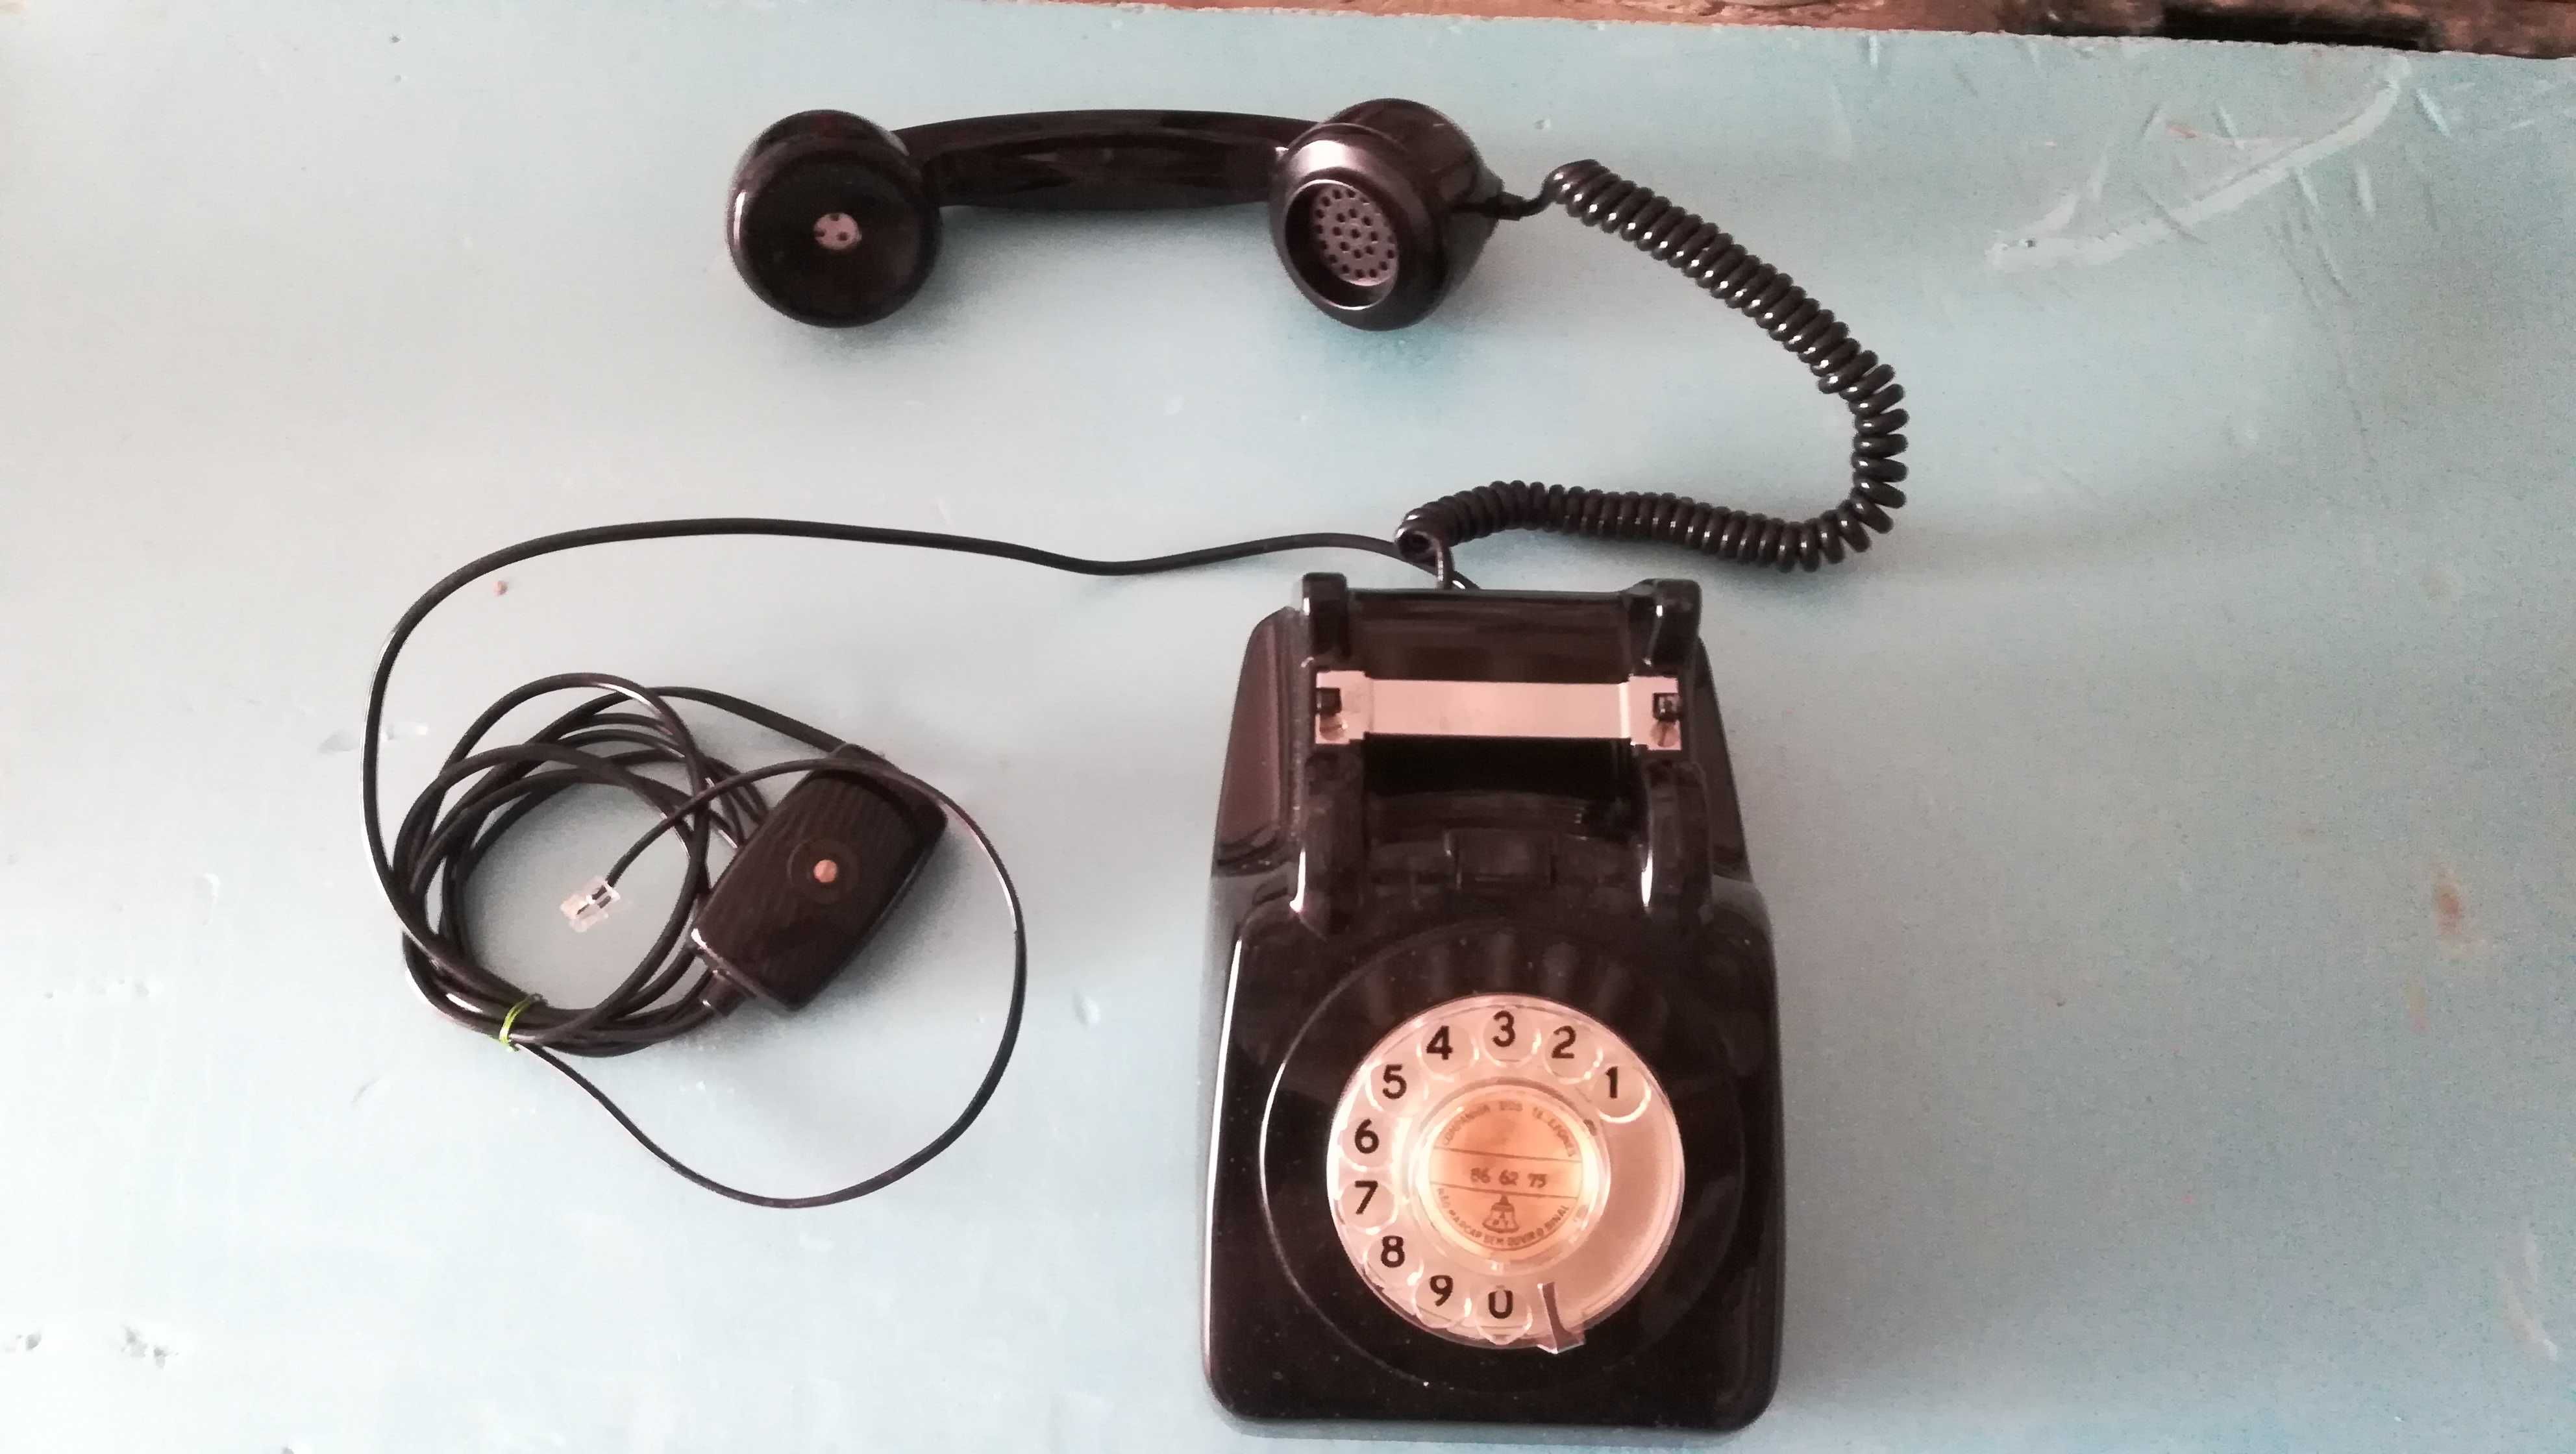 Telefones antigos - Modelo 7 - A trabalhar